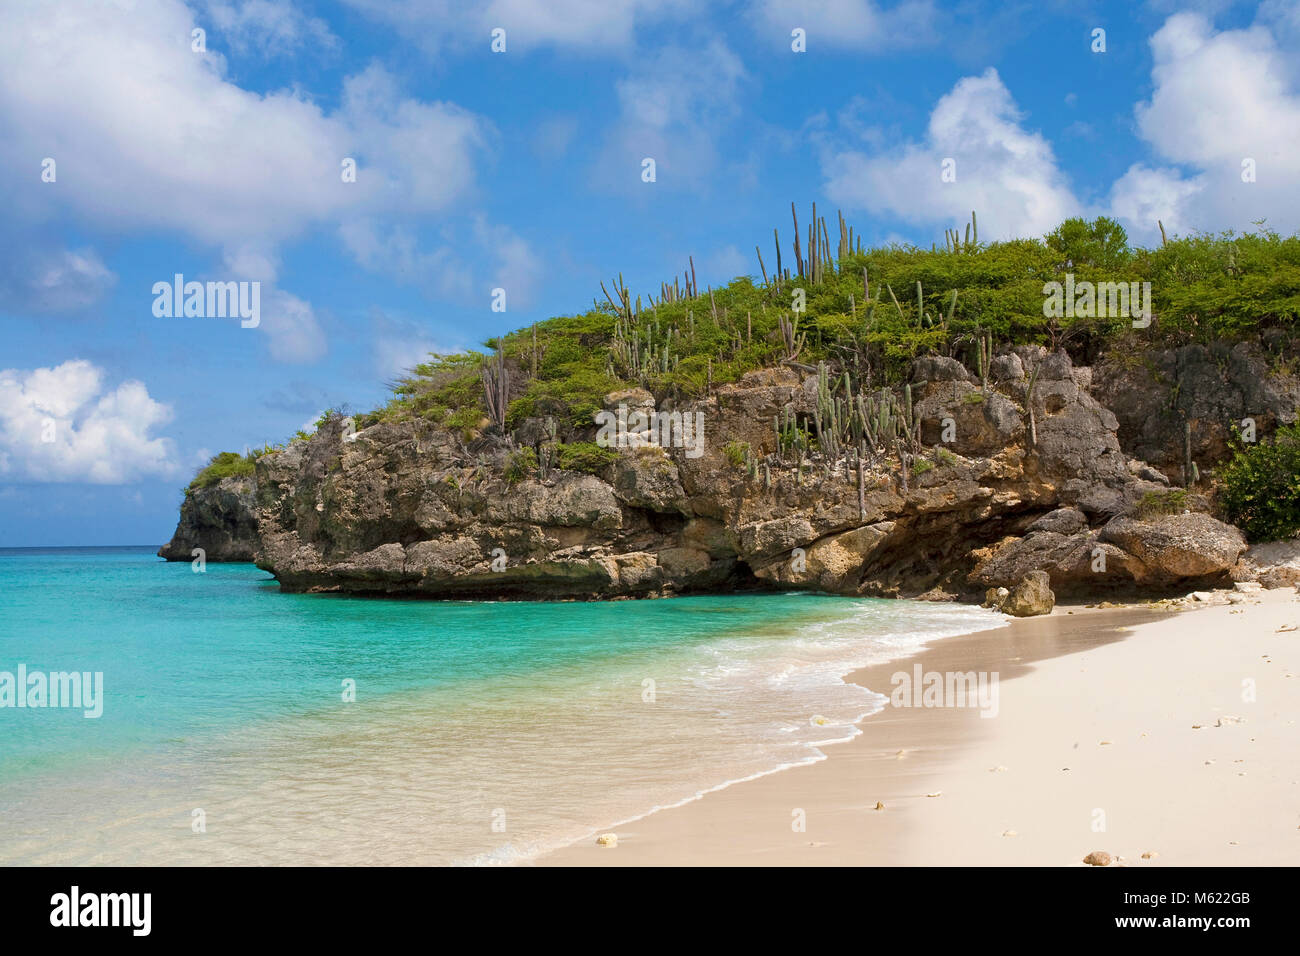 La playa más popular 'Grote Knip', Curazao, Antillas Neerlandesas, Caribe, Mar Caribe Foto de stock